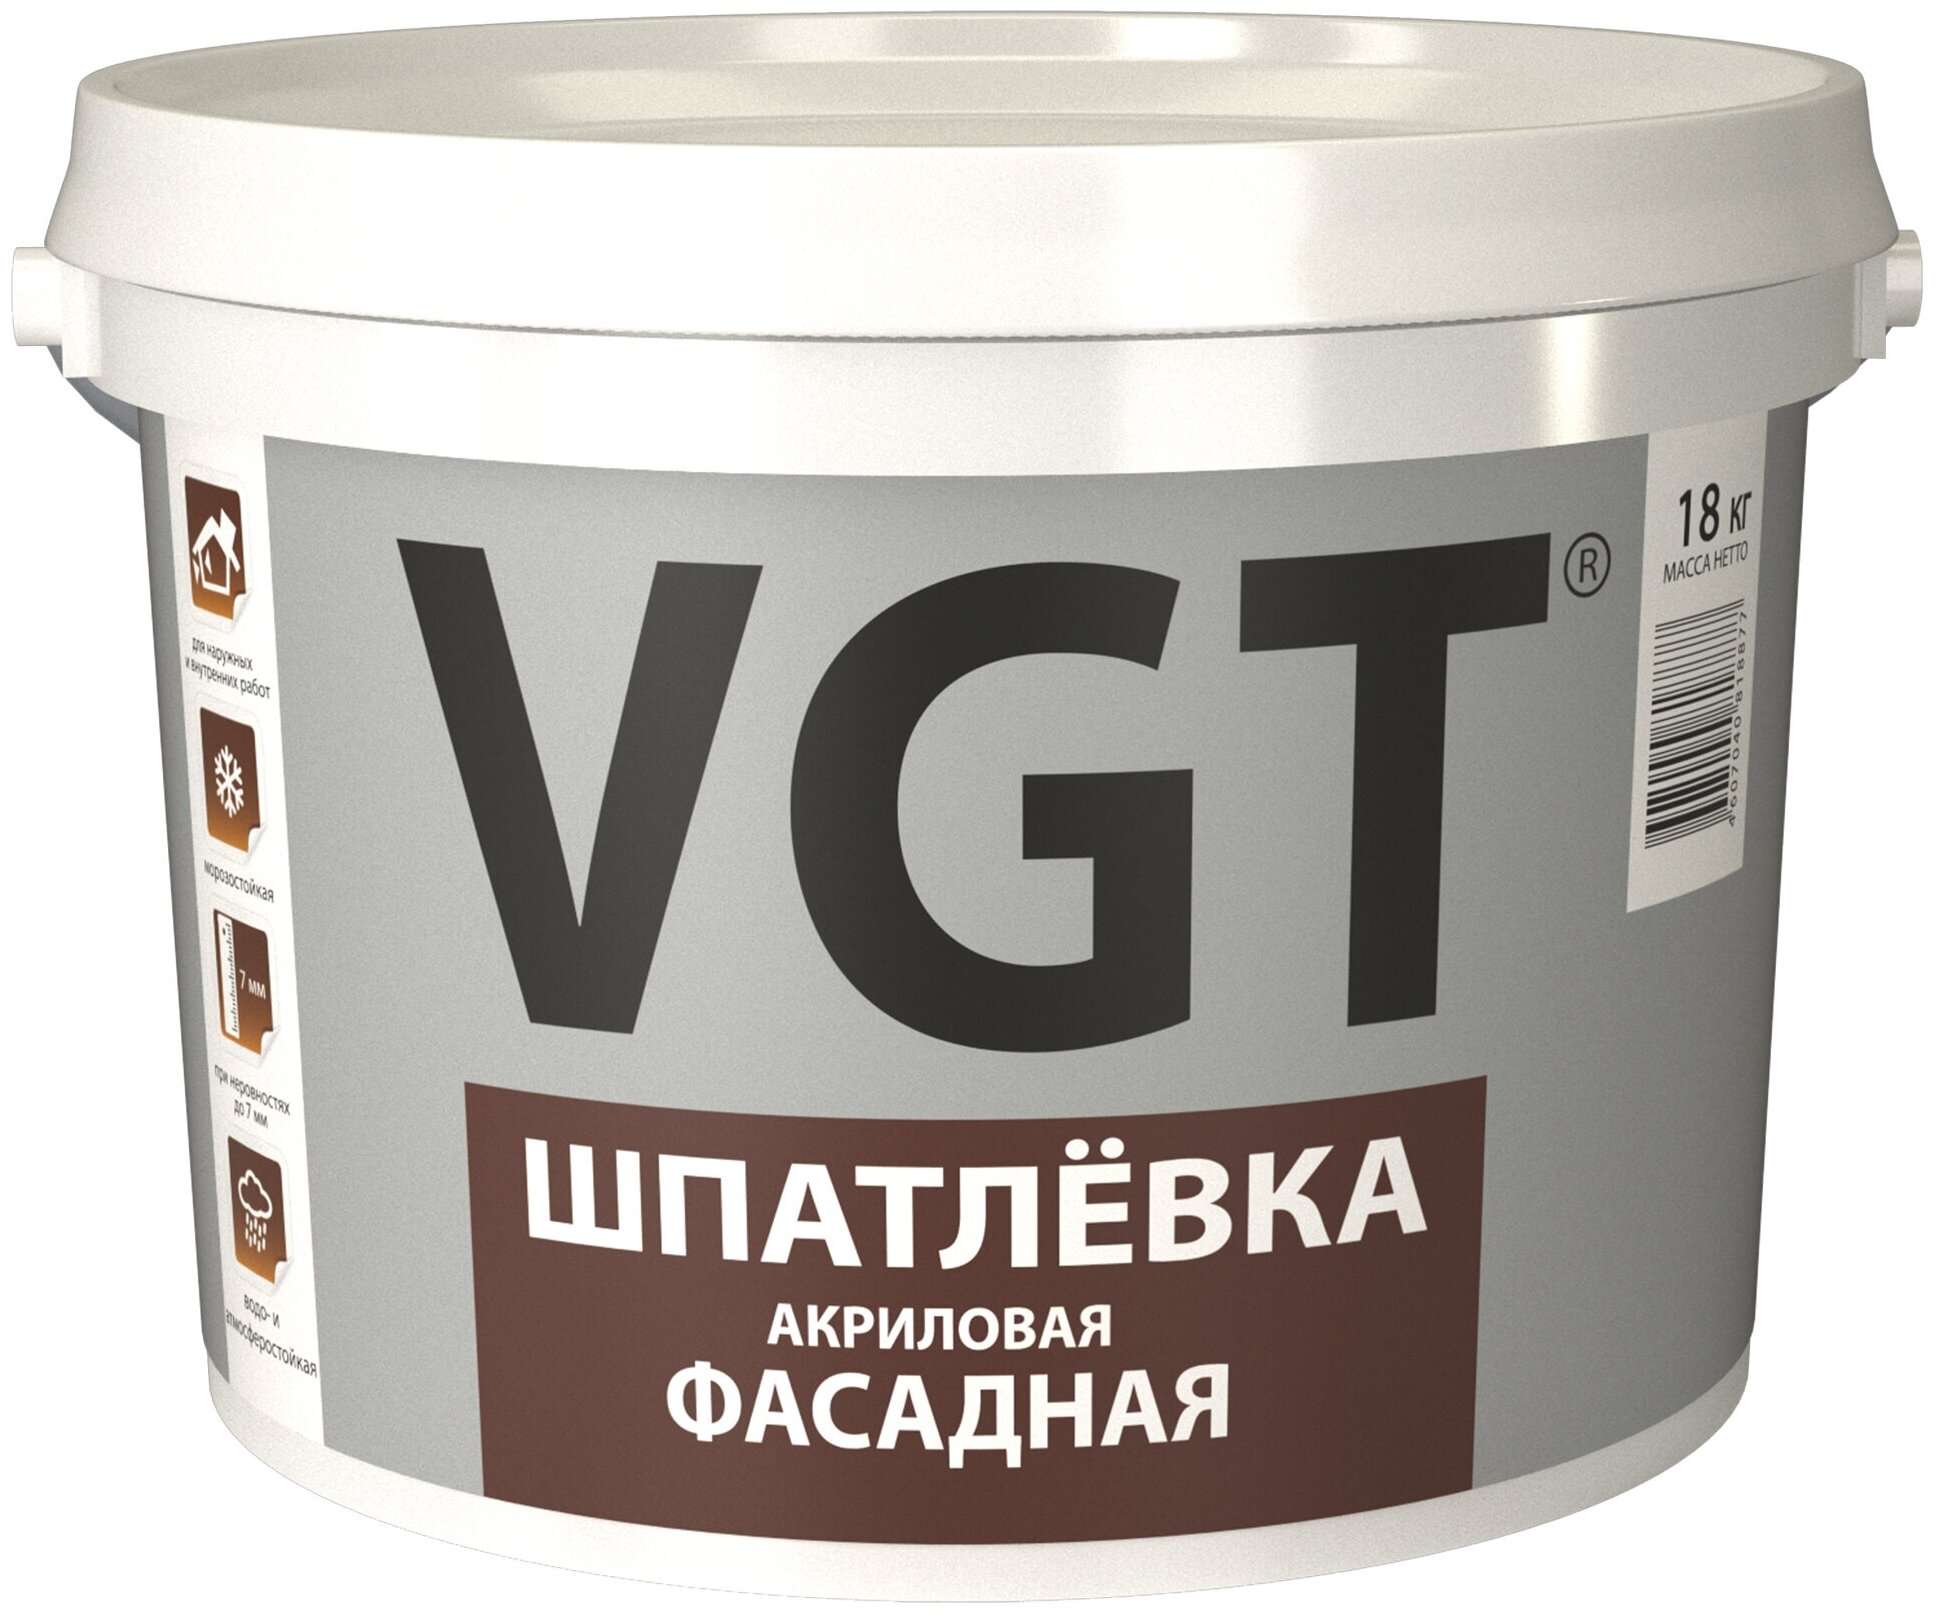 Шпатлевка акриловая фасадная VGT (18кг)